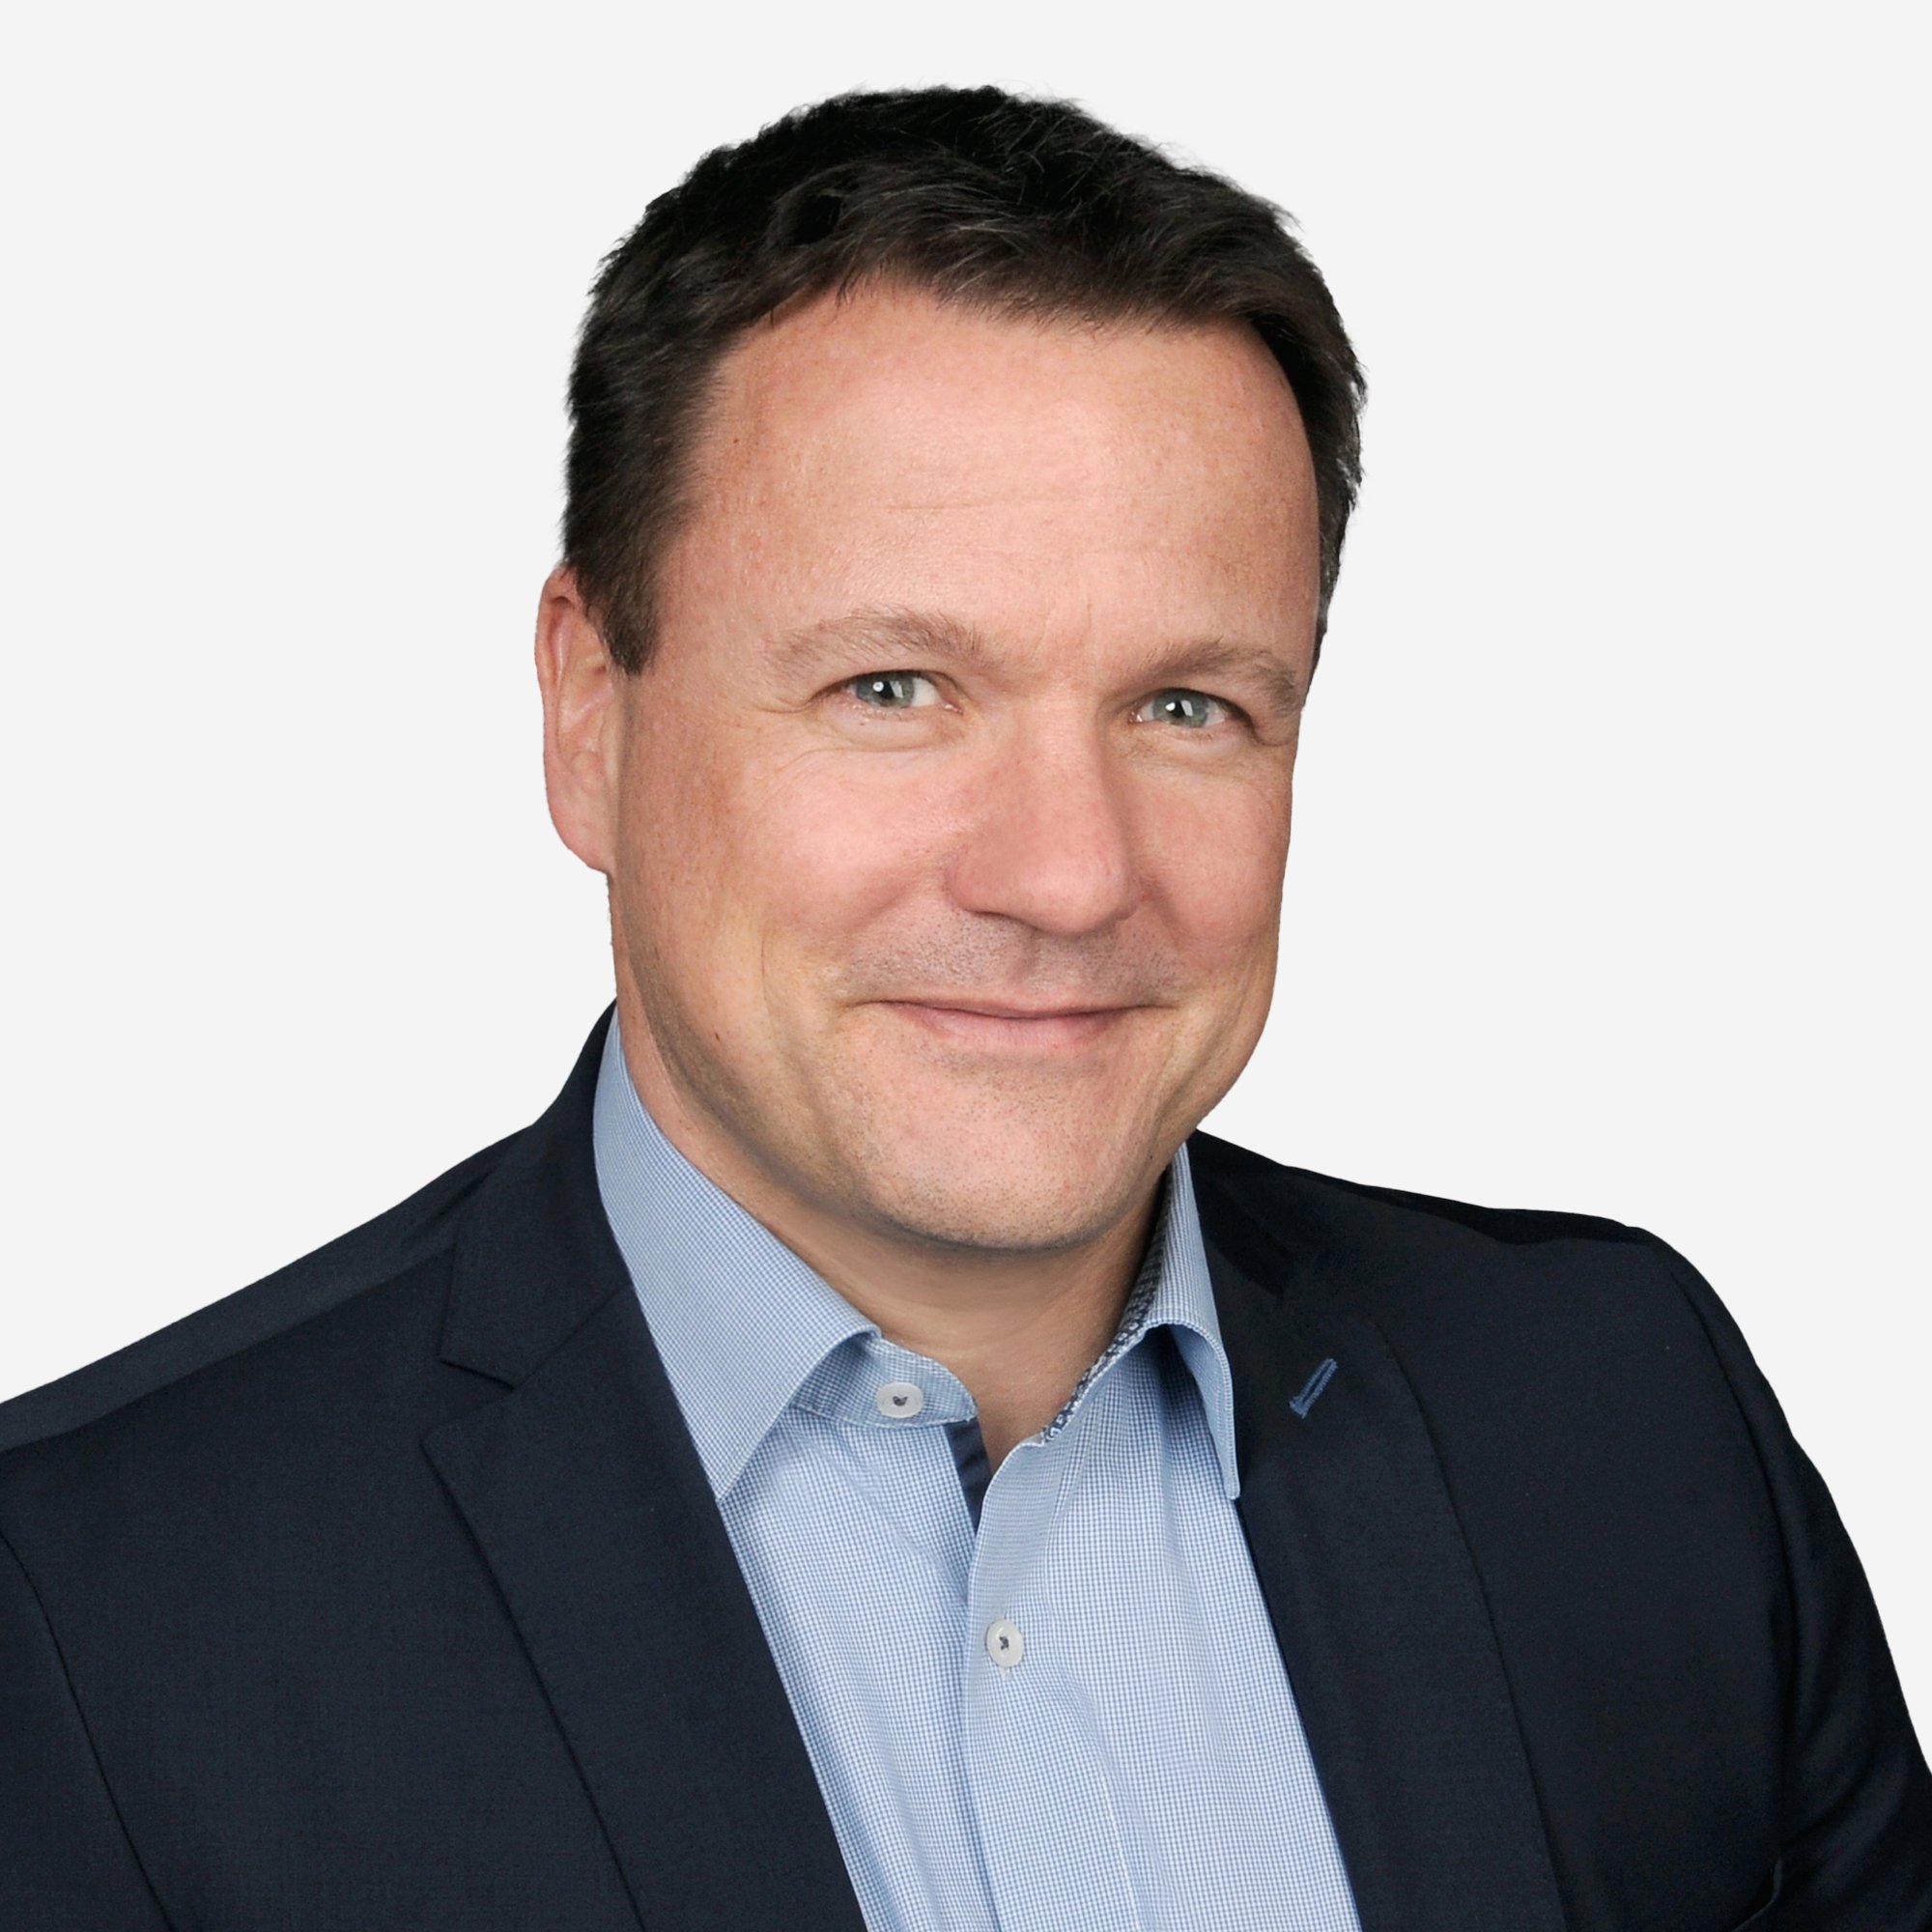 Profilbild von GAPTEQ-Gründer Steffen Vierkorn in hellblauem Hemd und dunklem Sacko